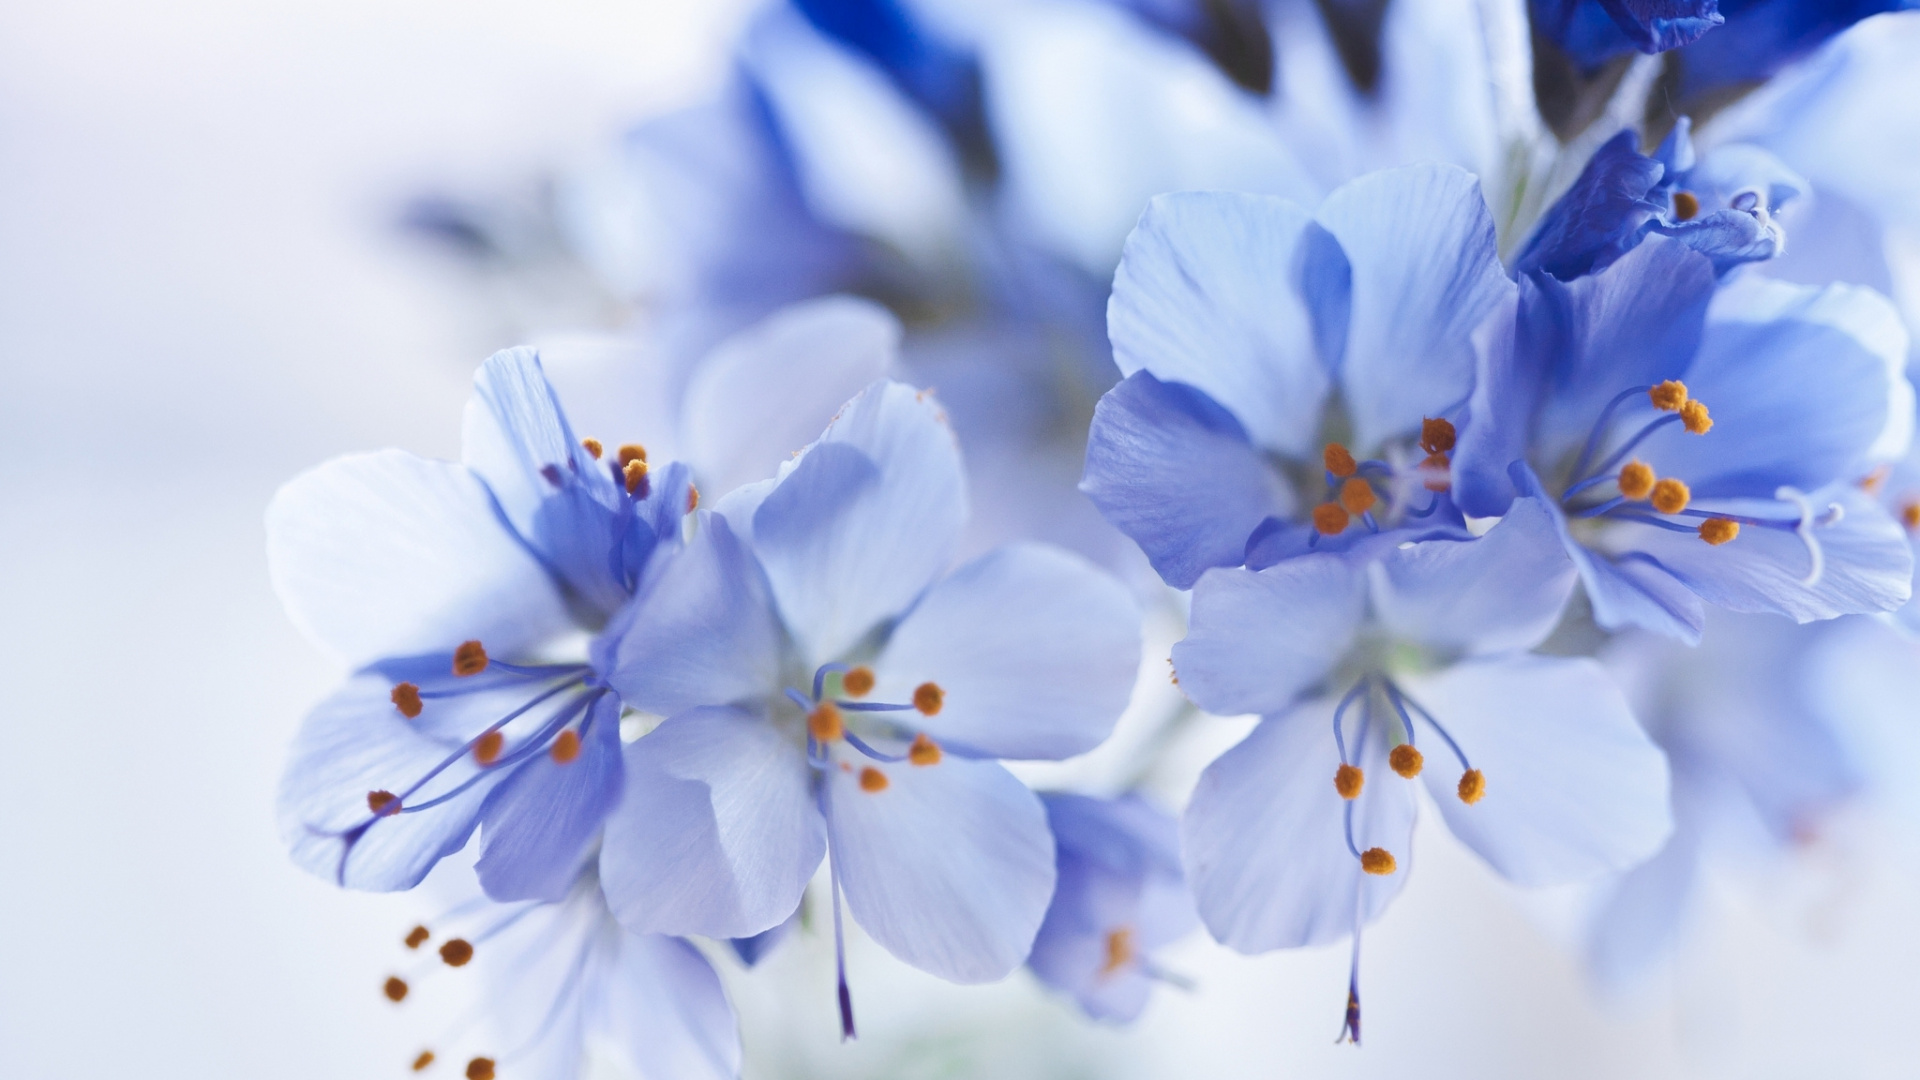 Fleurs Blanches et Bleues Dans L'objectif à Basculement. Wallpaper in 1920x1080 Resolution